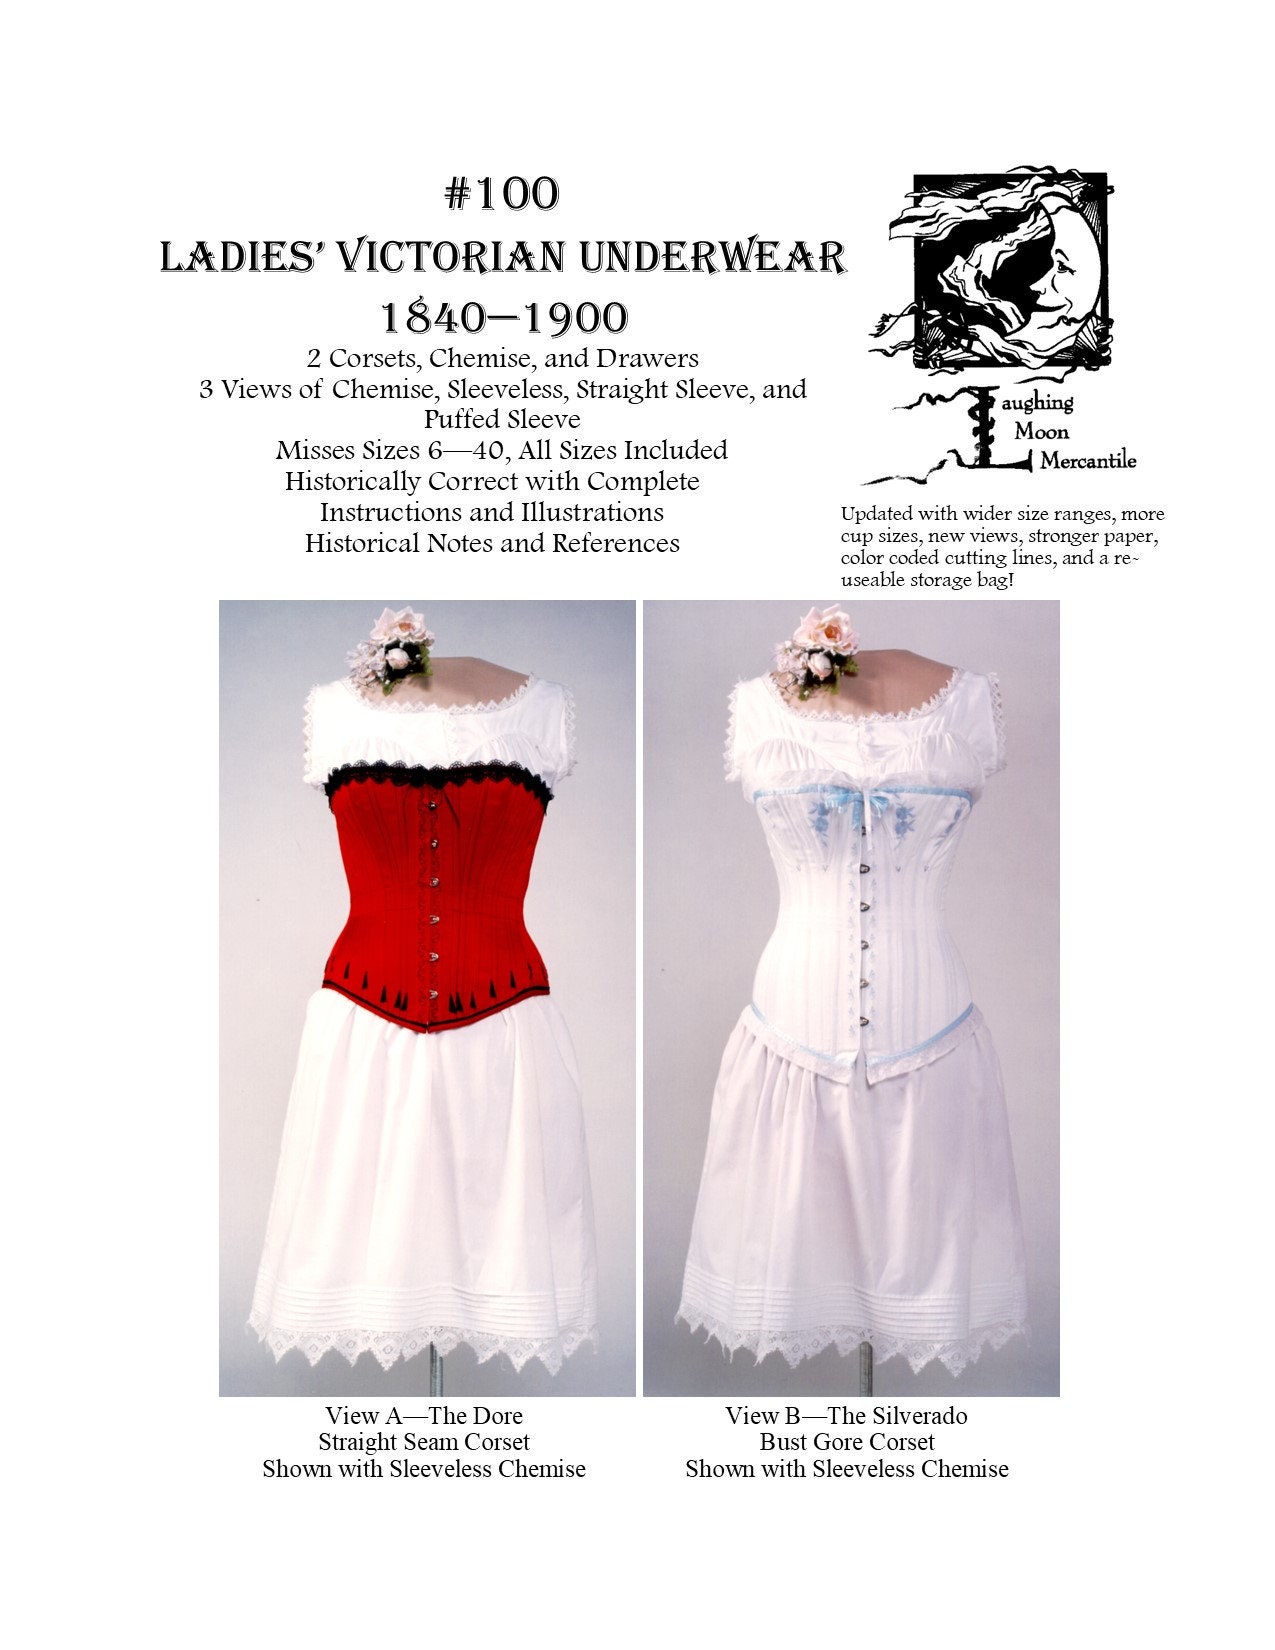 1115, Victorian Underwear